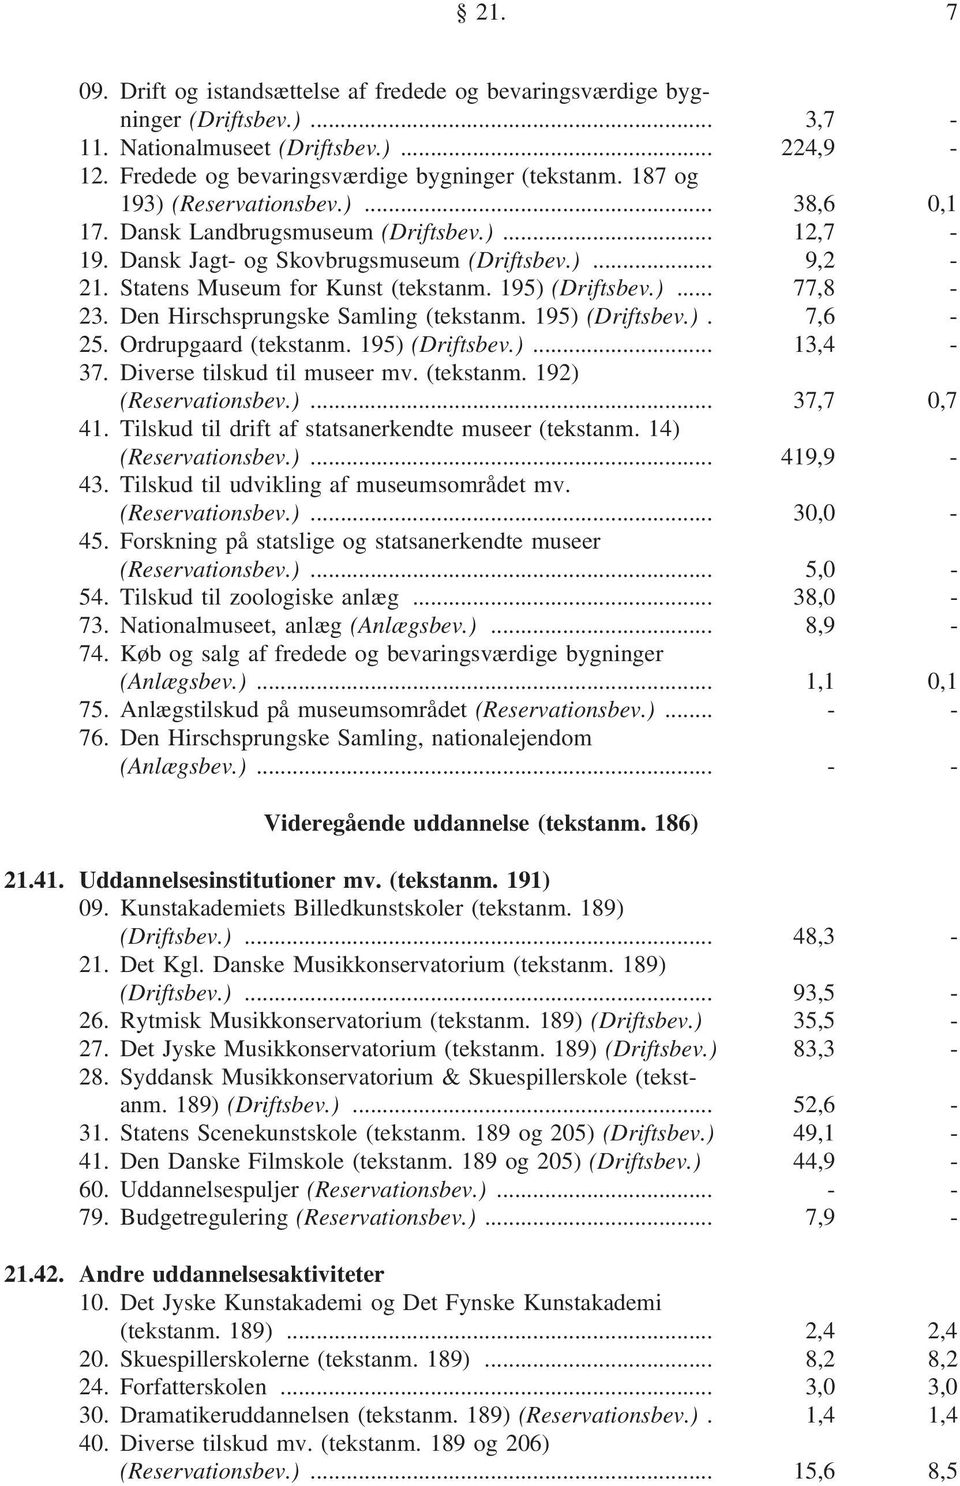 195) (Driftsbev.)... 77,8-23. Den Hirschsprungske Samling (tekstanm. 195) (Driftsbev.). 7,6-25. Ordrupgaard (tekstanm. 195) (Driftsbev.)... 13,4-37. Diverse tilskud til museer mv. (tekstanm. 192) (Reservationsbev.